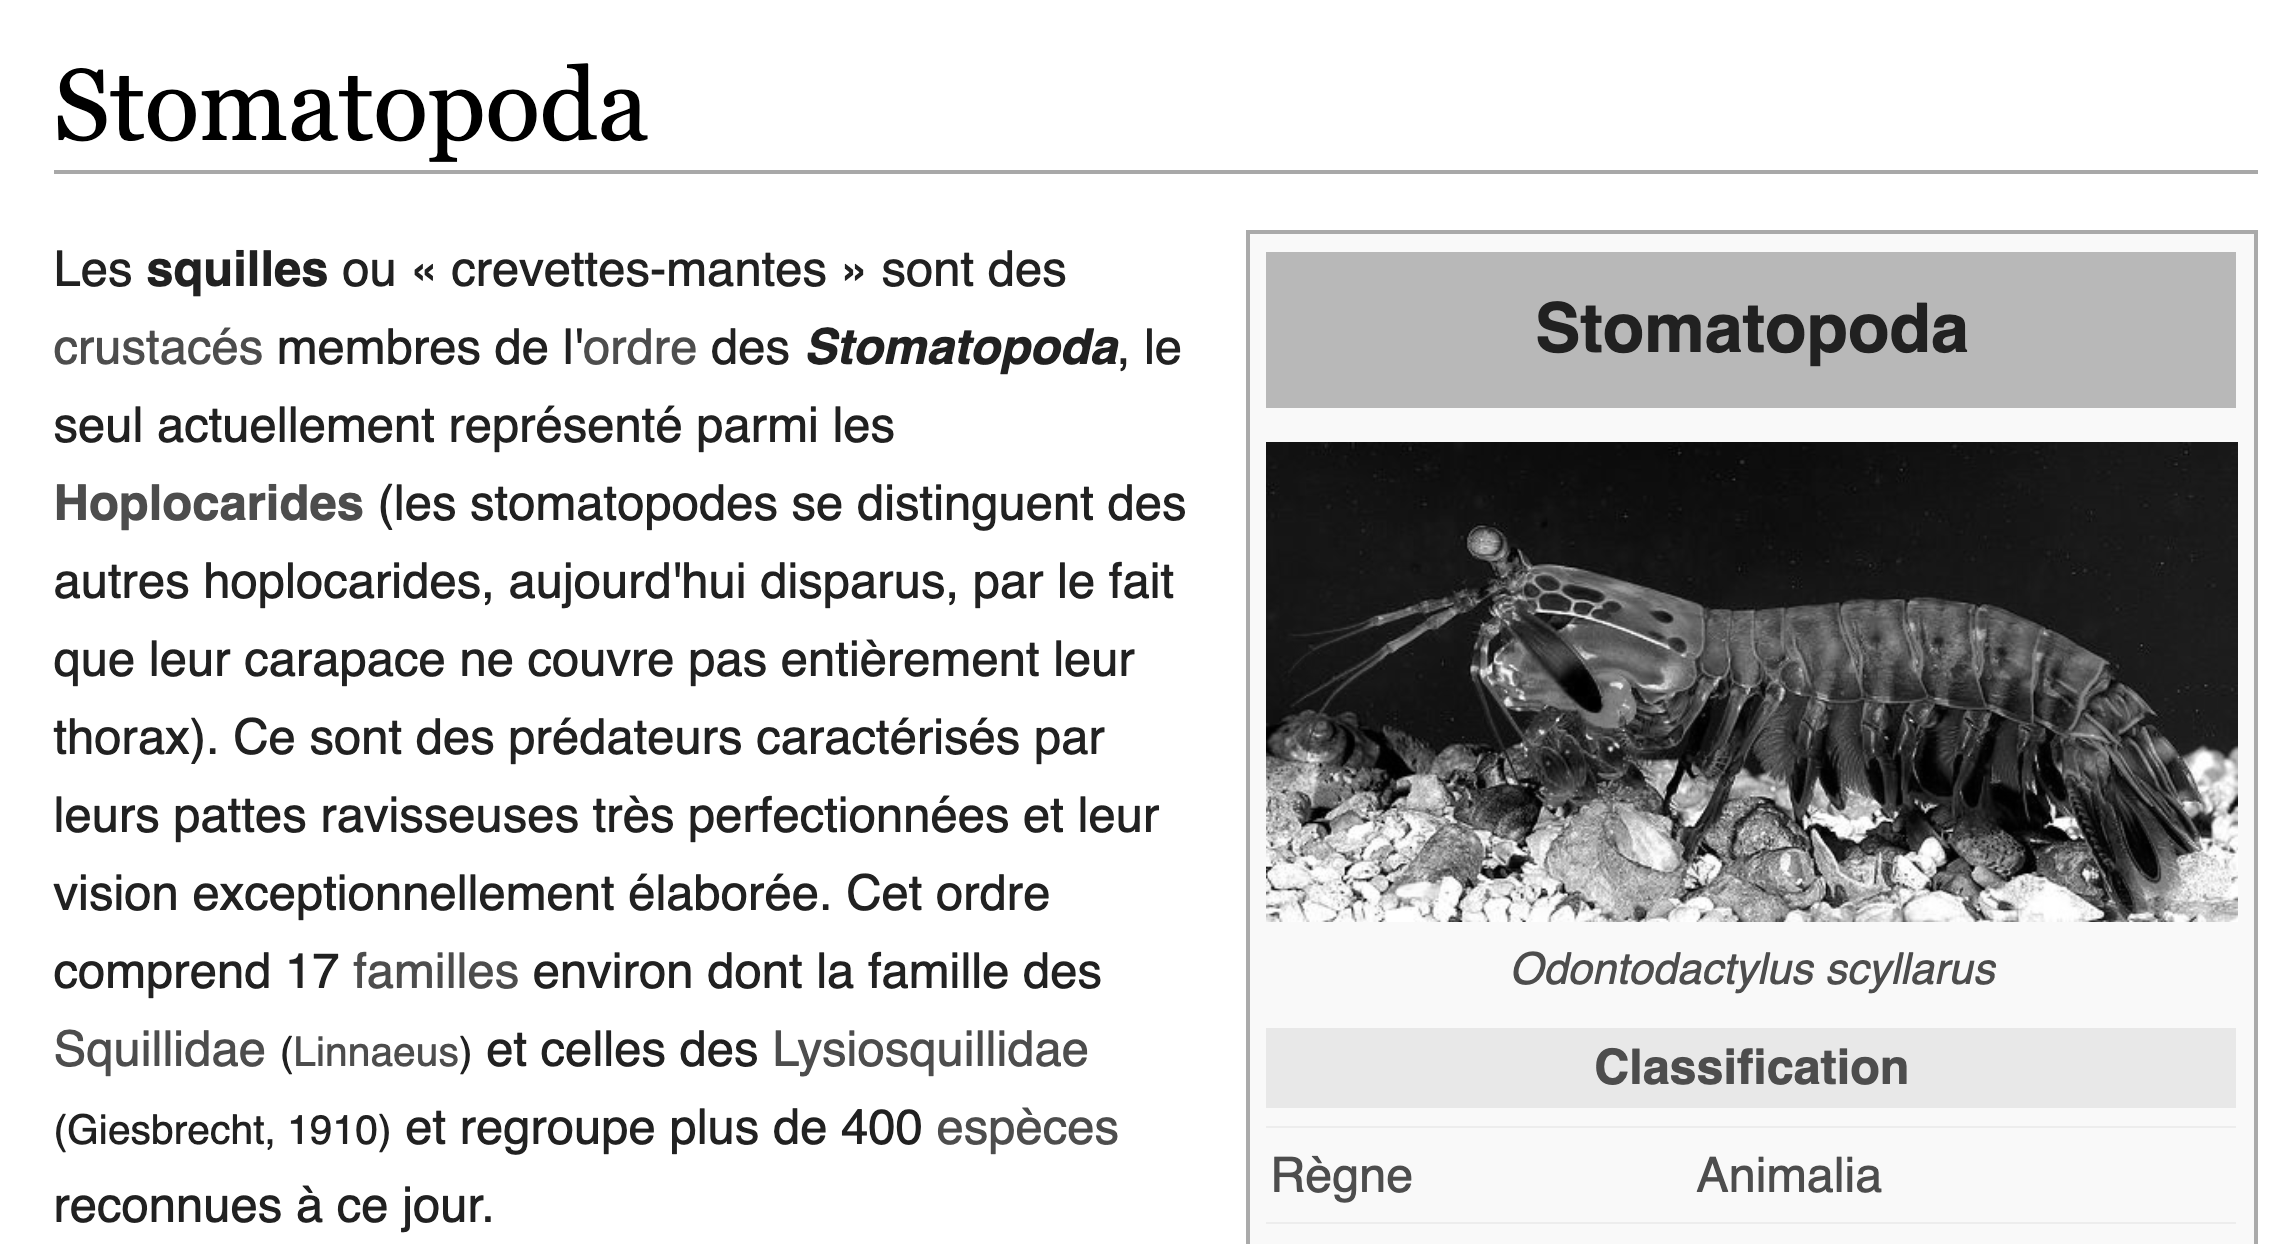 Article de Wikipédia montrant un paragraphe de texte avec des liens dans le texte. L'image a été convertie en noir et blanc, ce qui rend les liens beaucoup plus difficiles à voir.